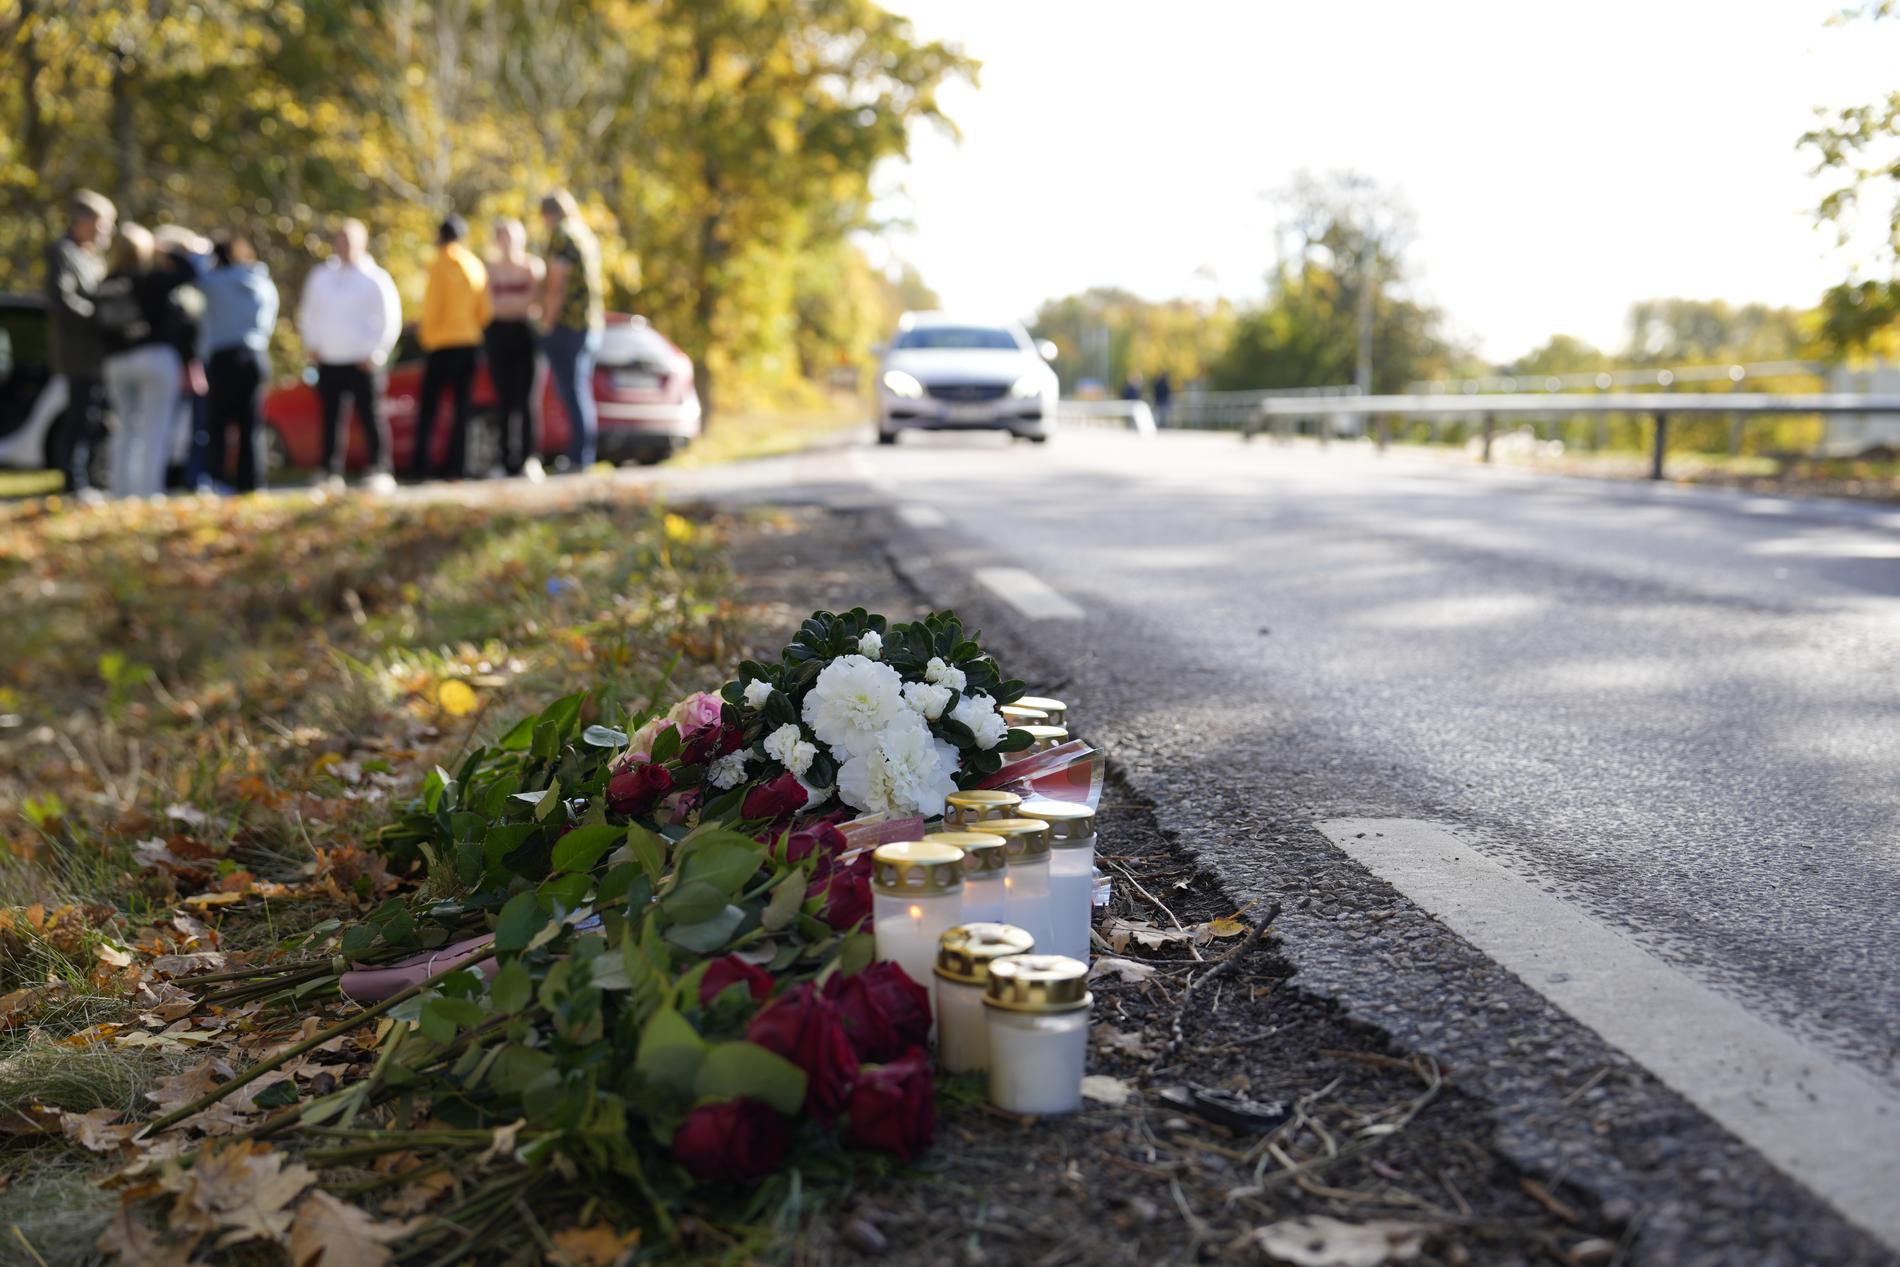 Många har lämnat blommor och tänt ljus vid olycksplatsen.